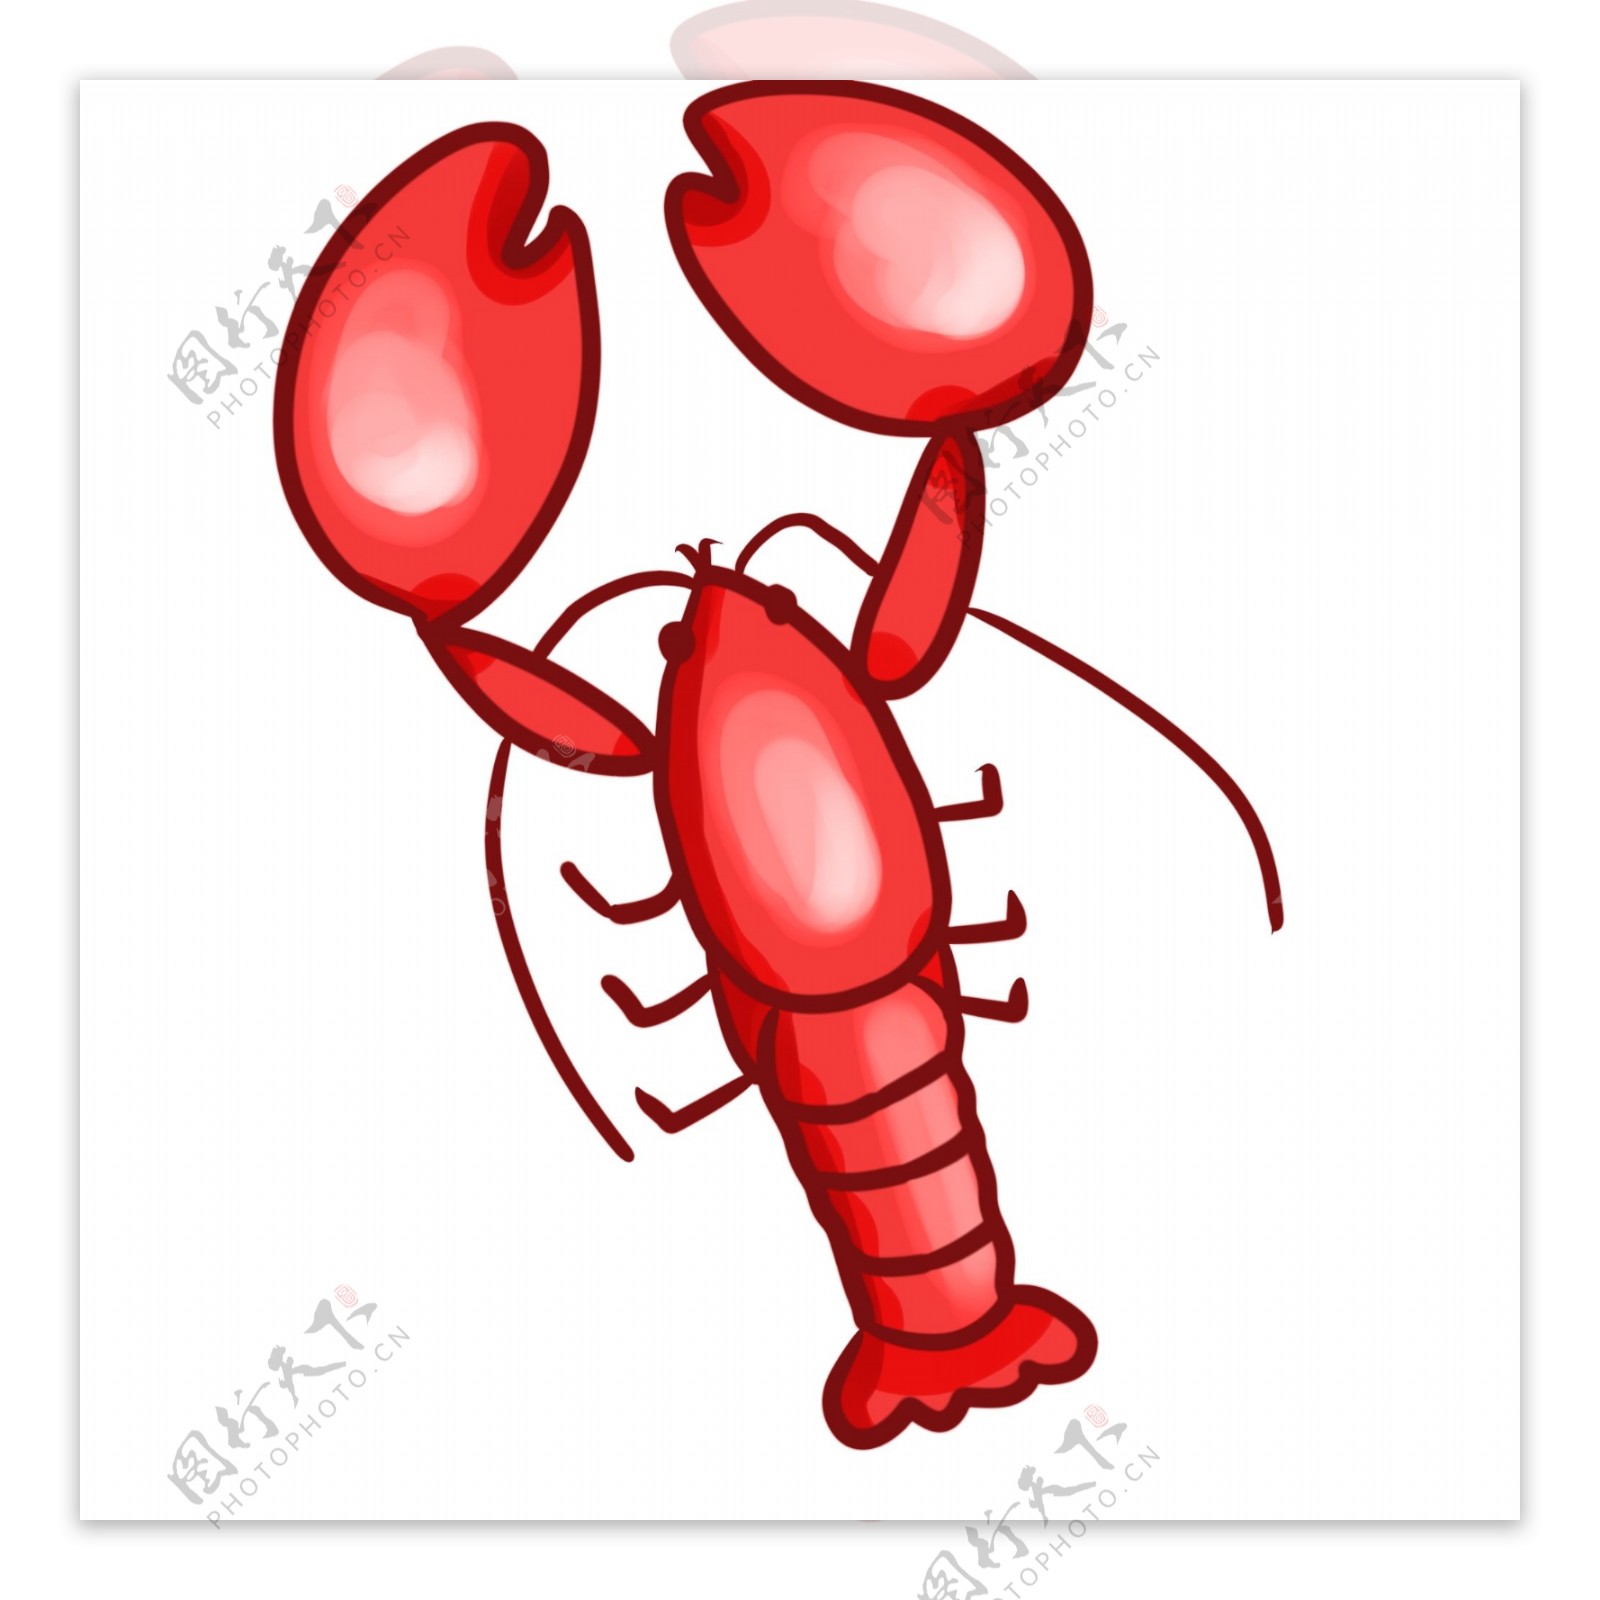 肥美的红色龙虾插画